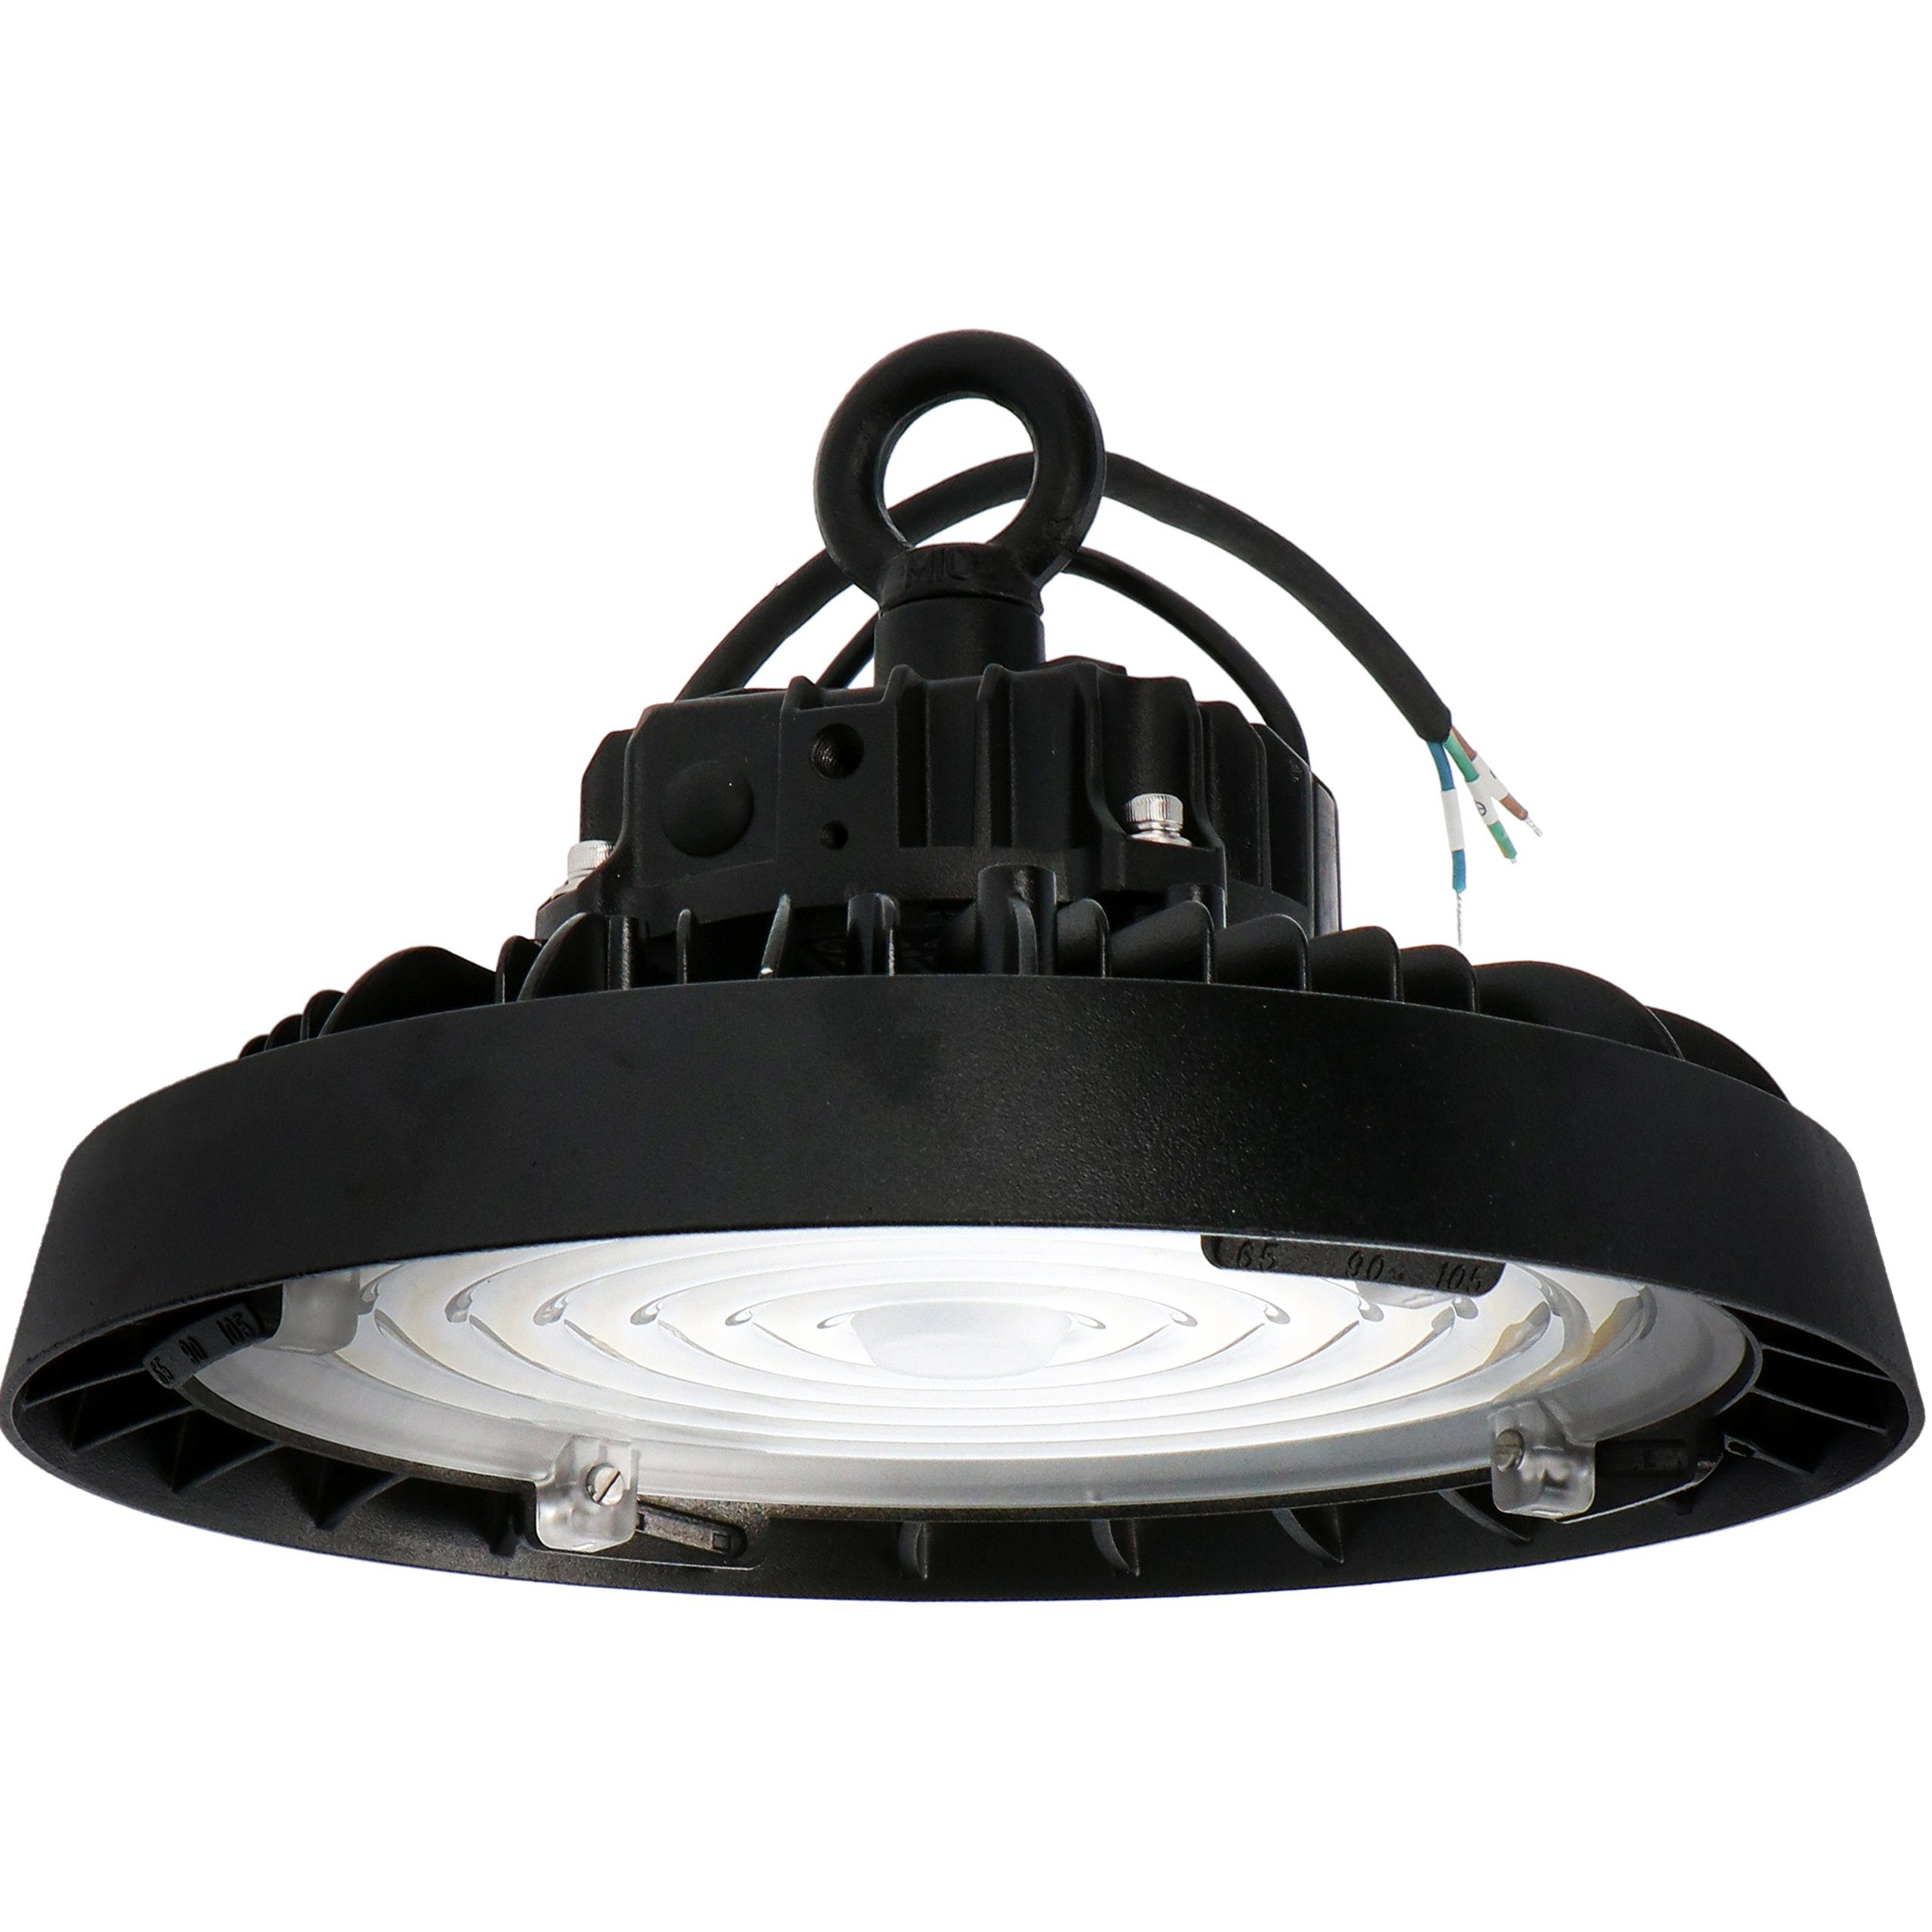 LED's light PRO LED Pendelleuchte 2400380 LED-Hallentiefstrahler, LED, 1-10V dimmbar 160W kaltweiß IP65 Abstrahlwinkel variabel